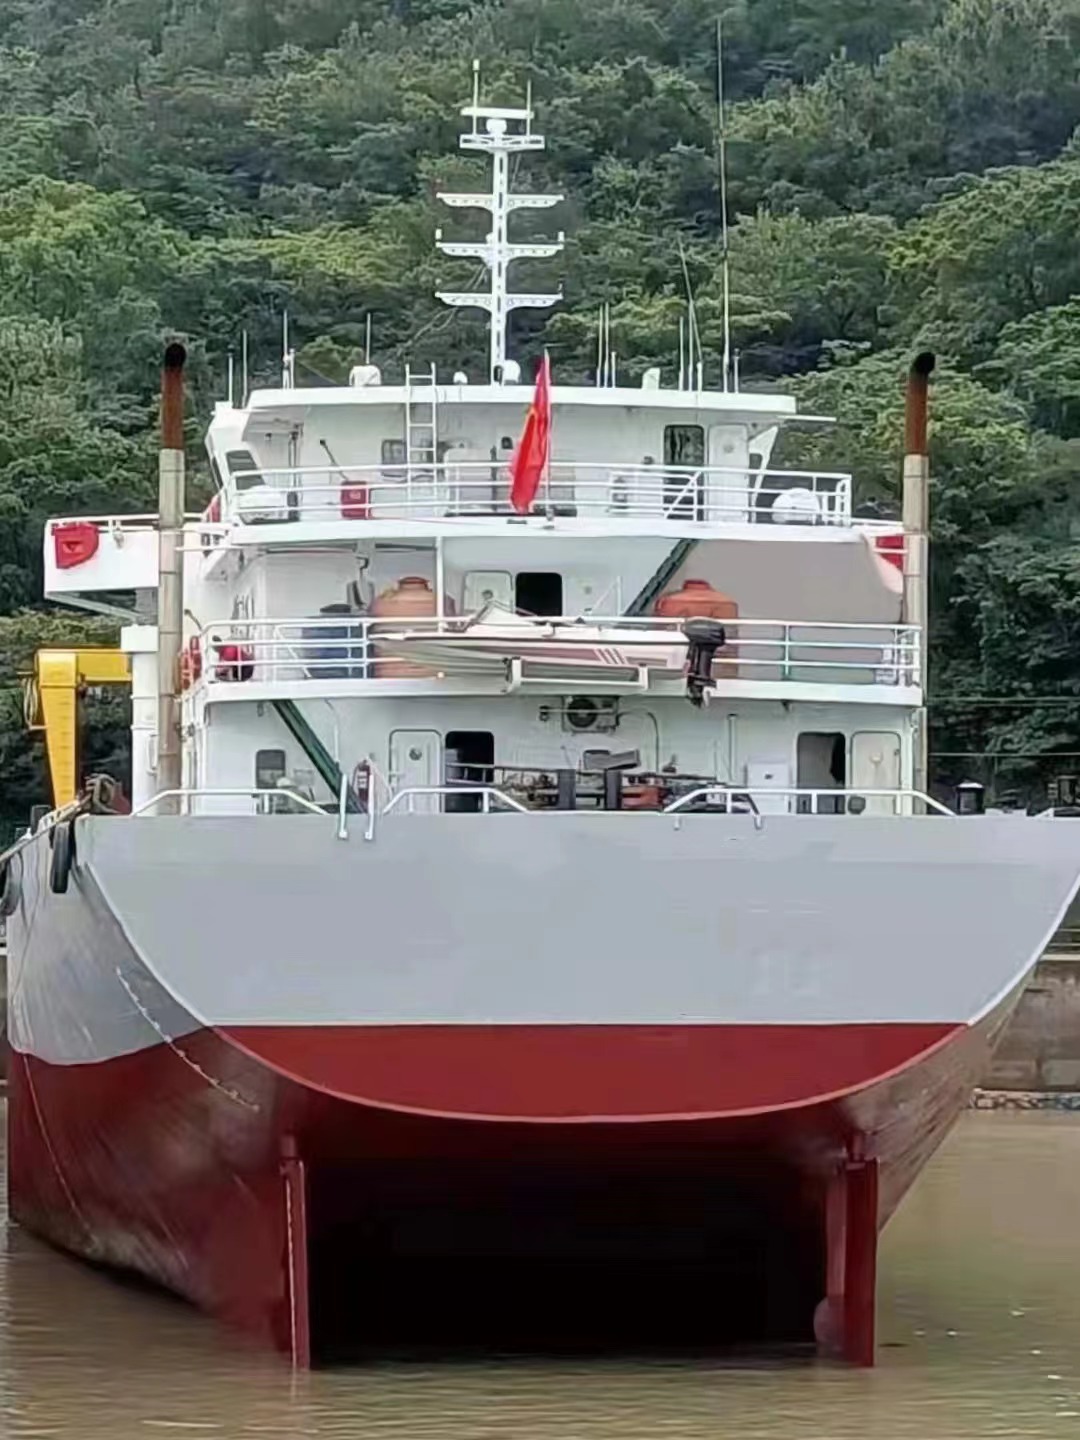 出售5500吨干货船： 2015年5月江苏扬州建造/